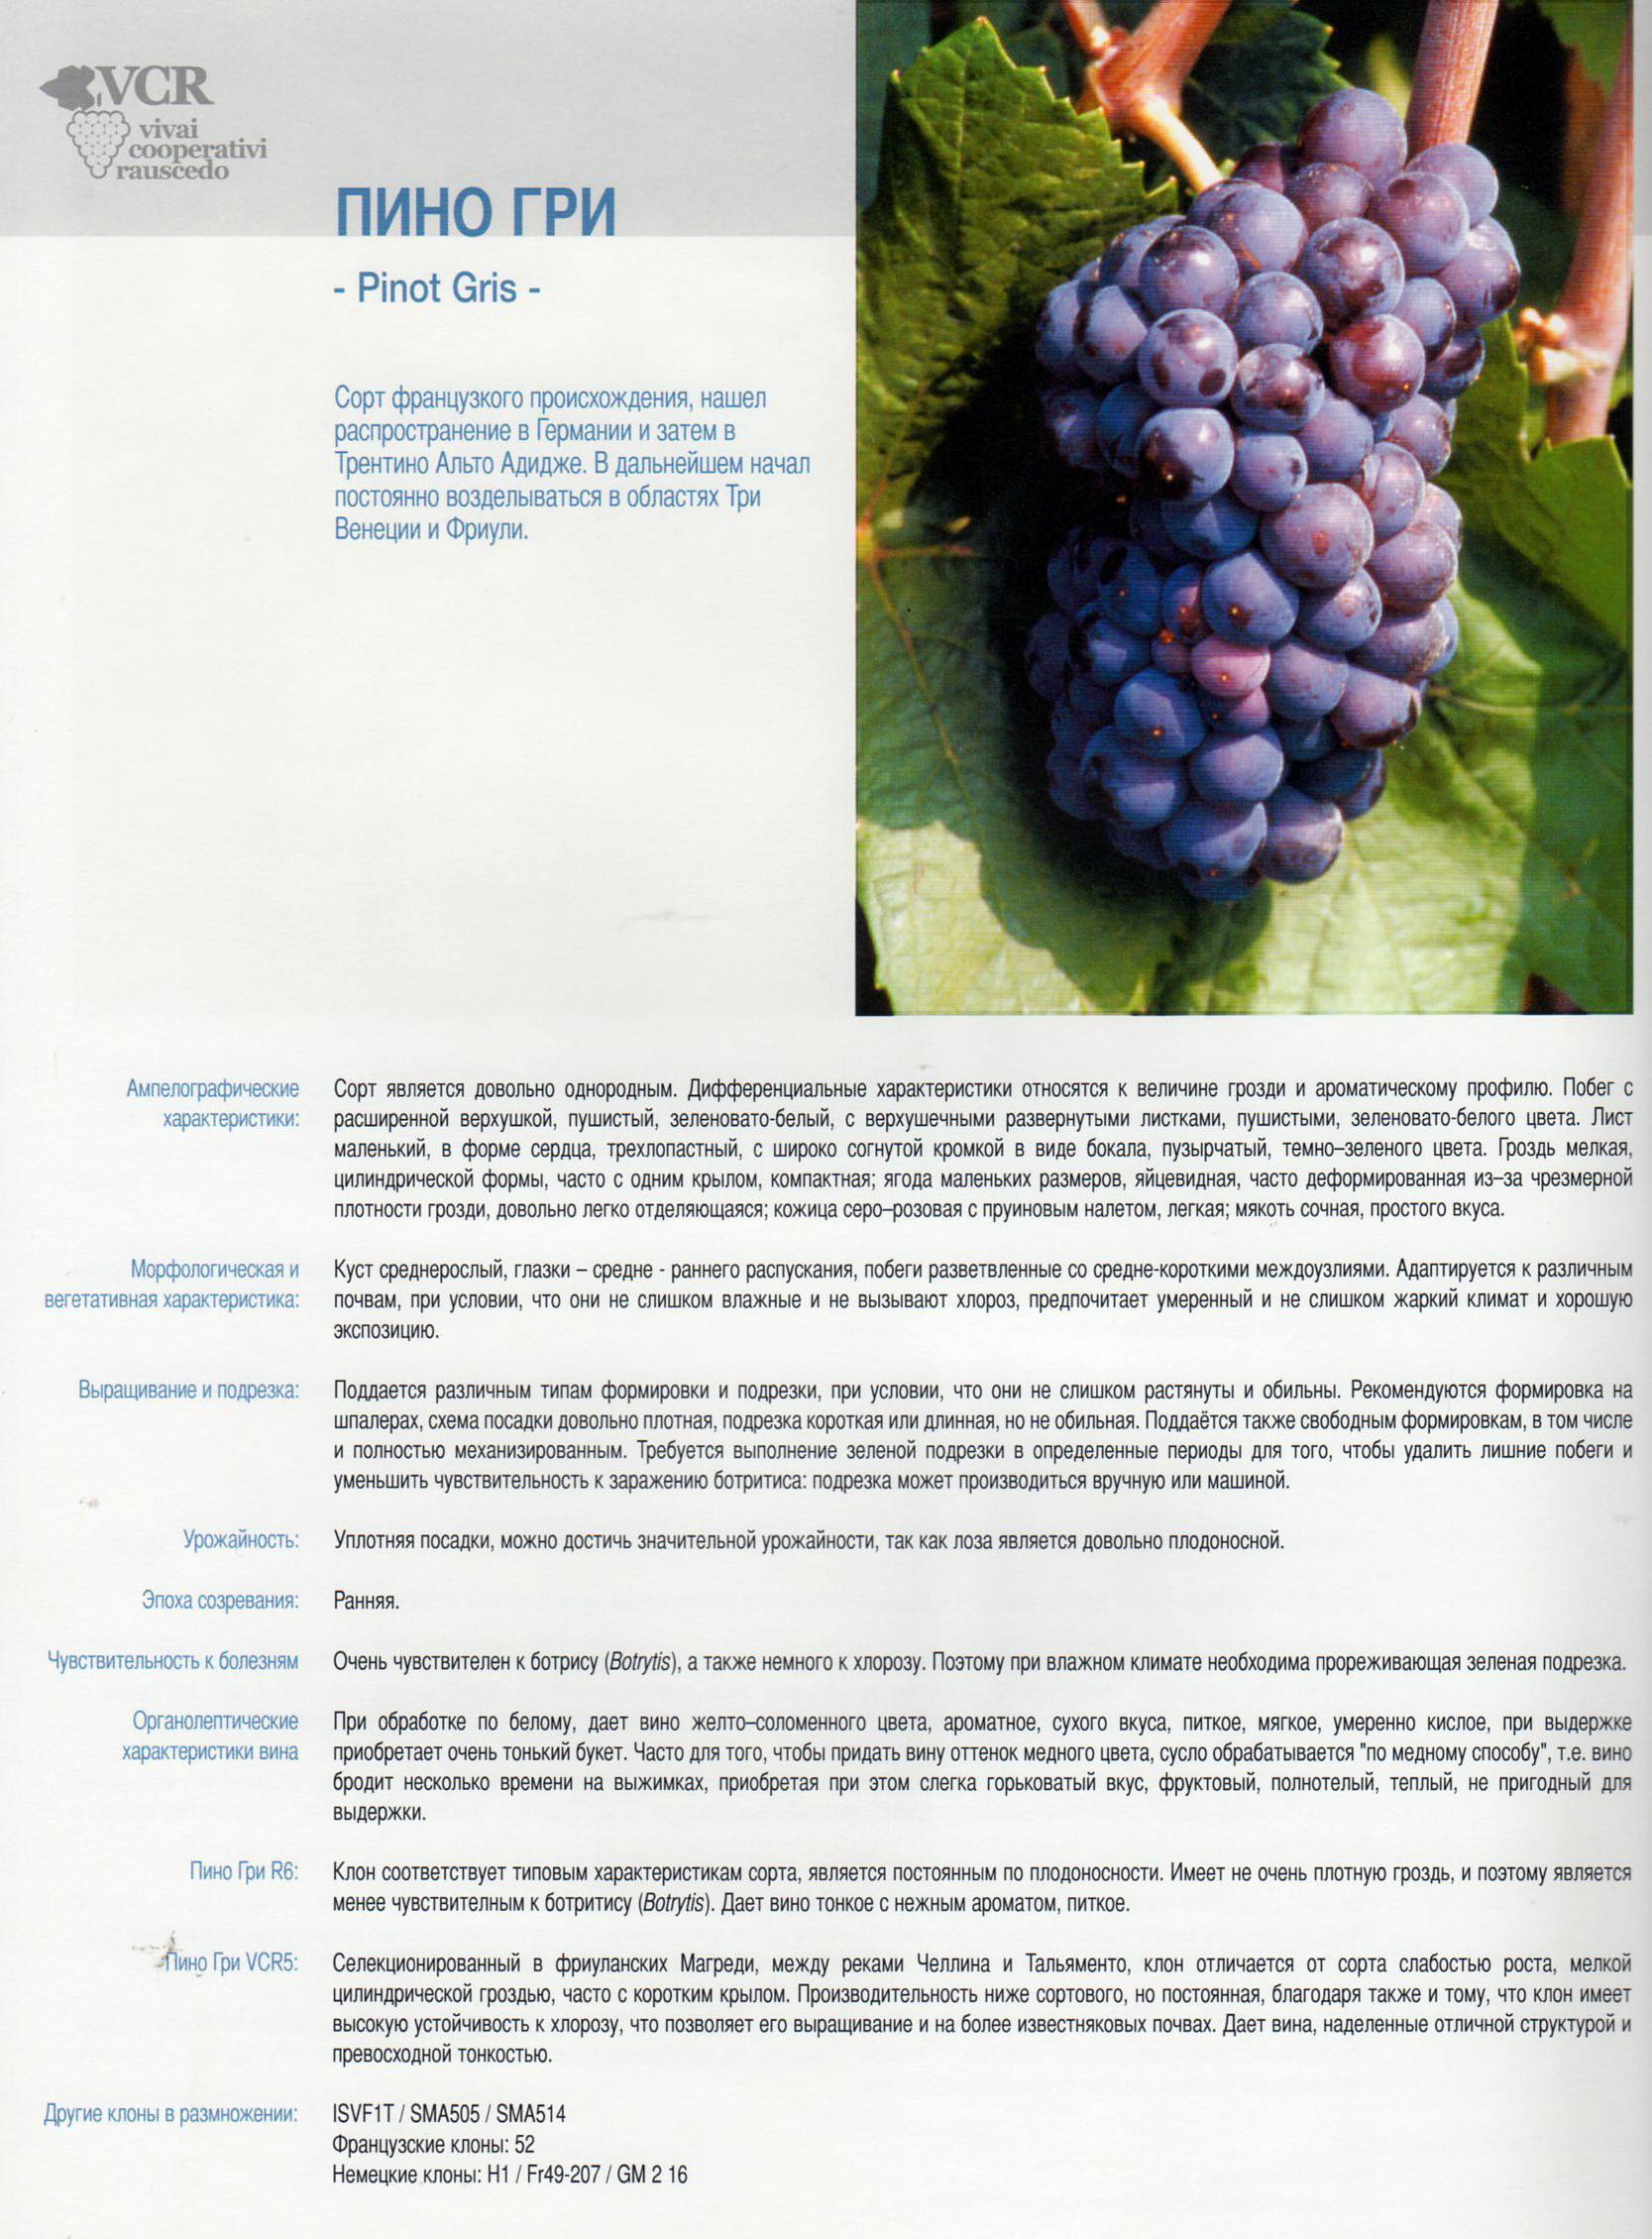 Описание и технология выращивания винограда сорта Пино Гриджио